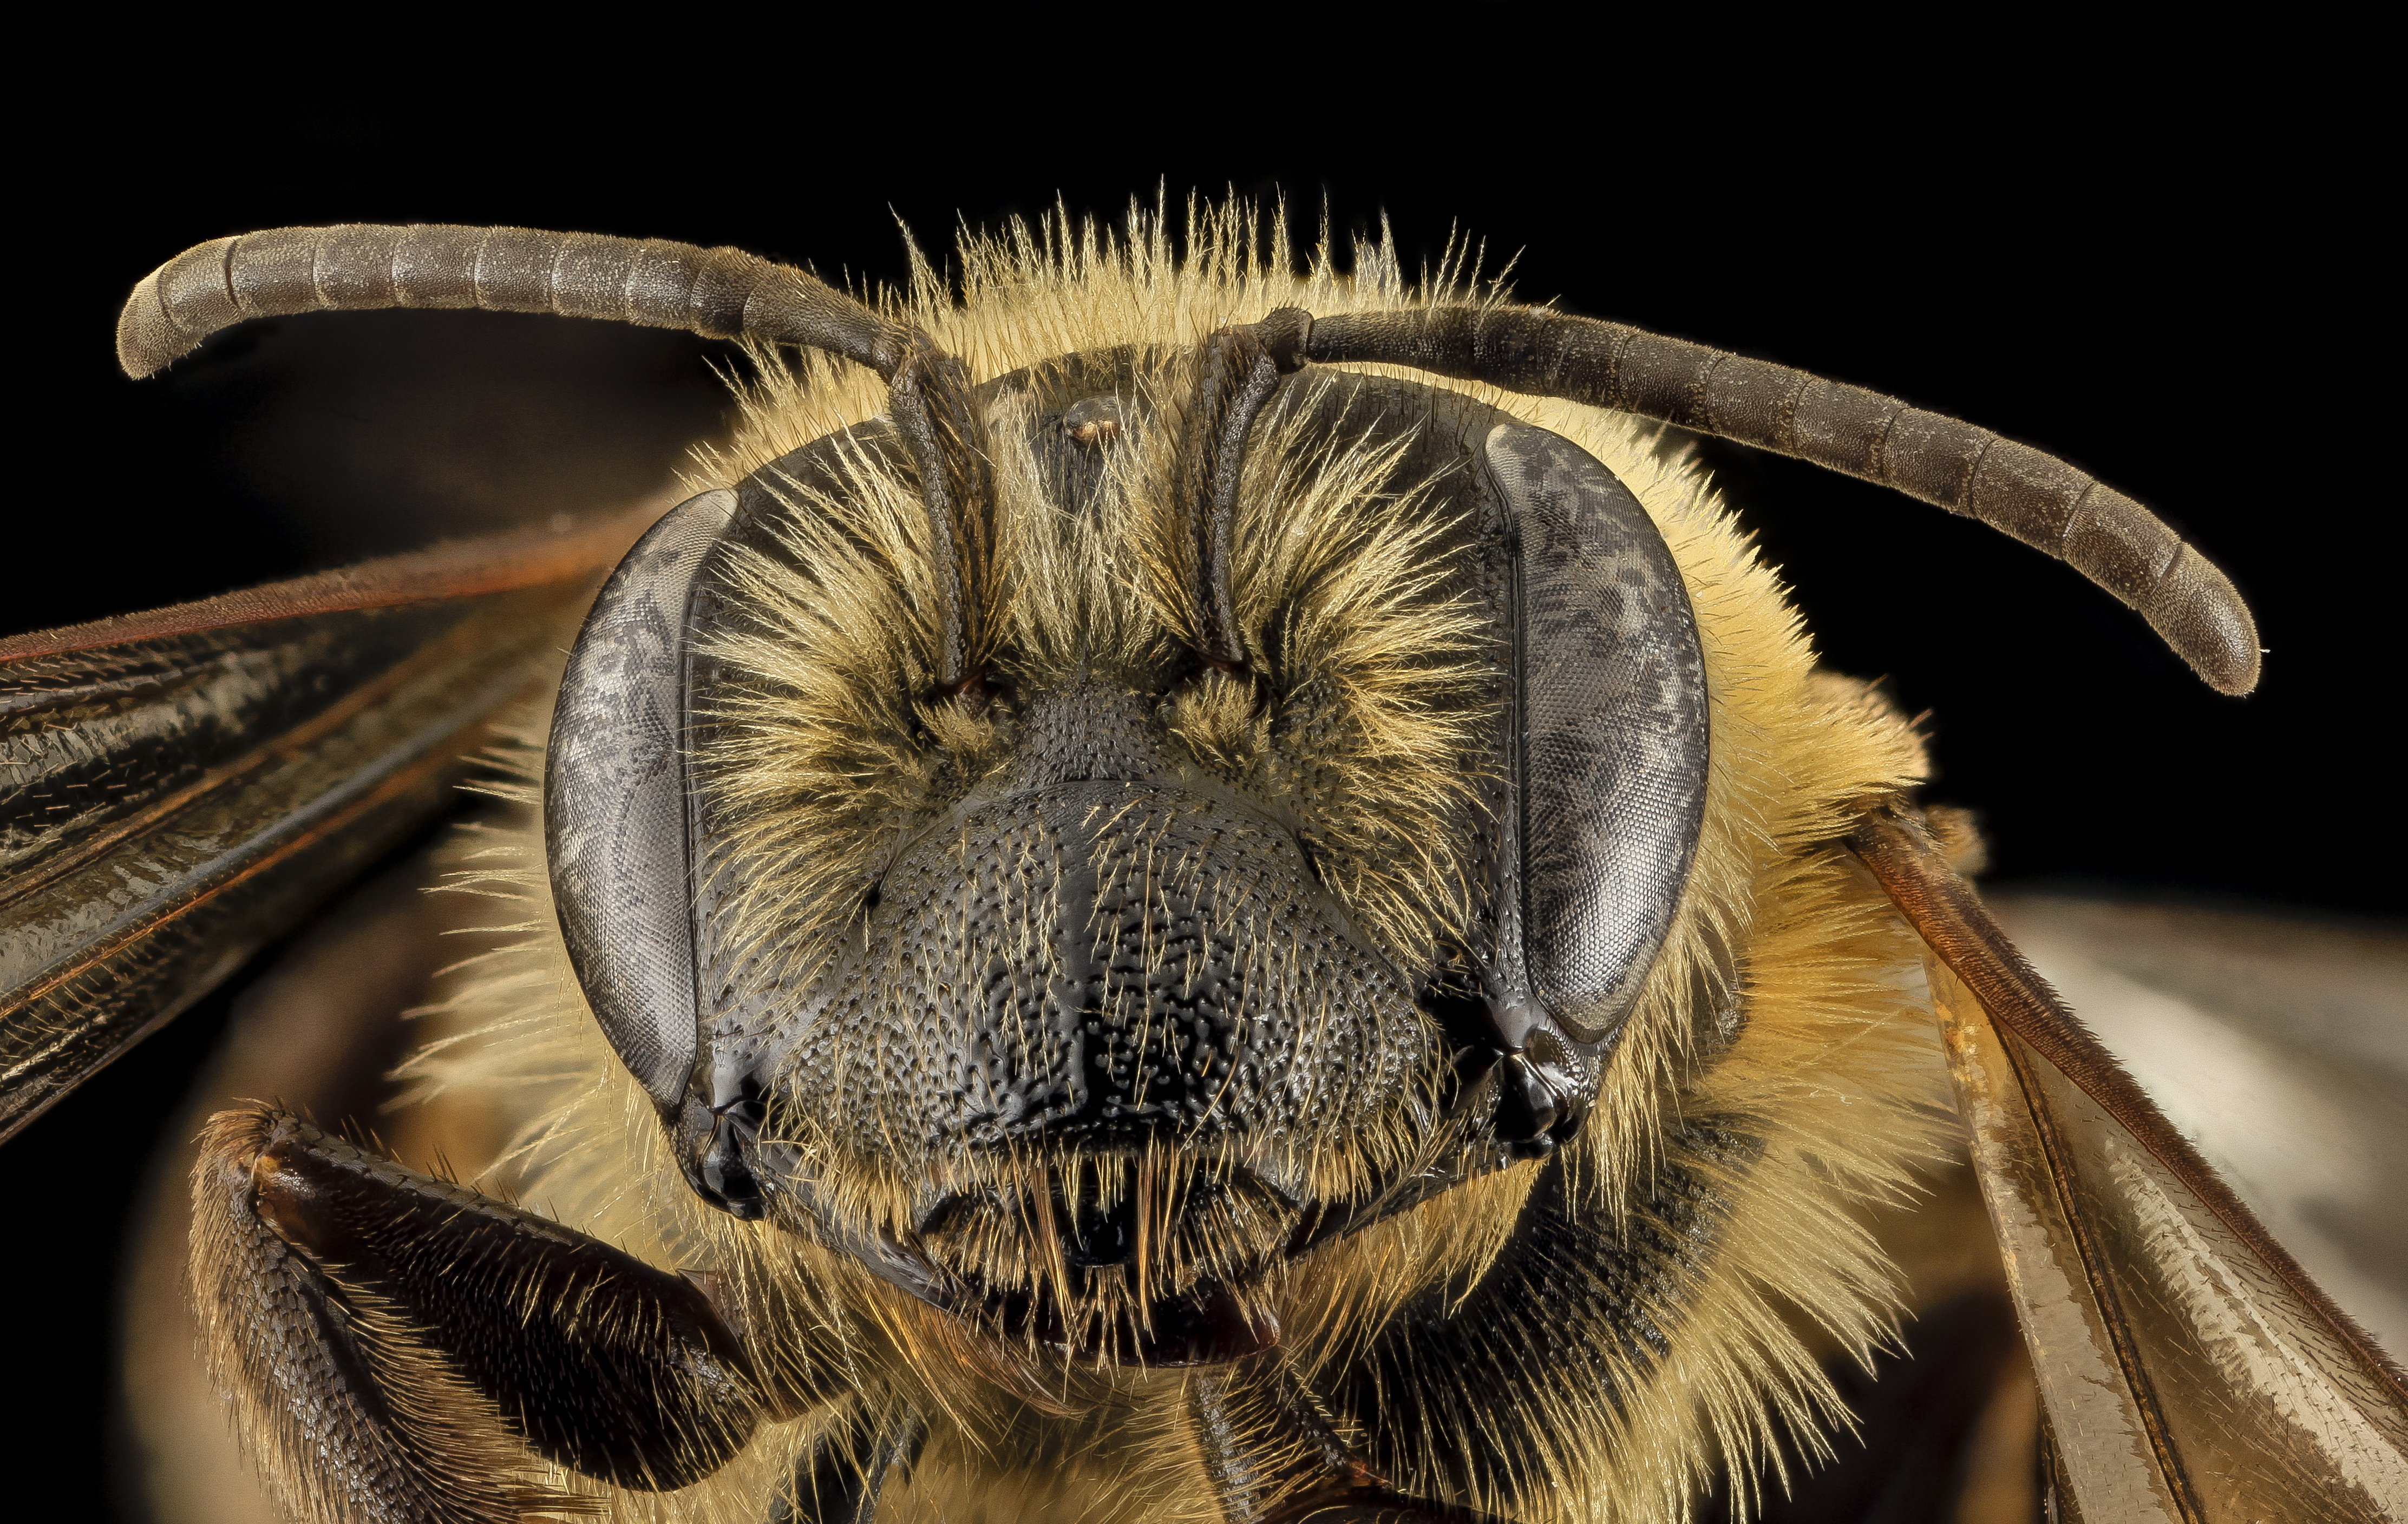 Andrena nivalis, F, Face,Giles Co, VA 2014-02-05-16.59.35 ZS PMax (12542754264)